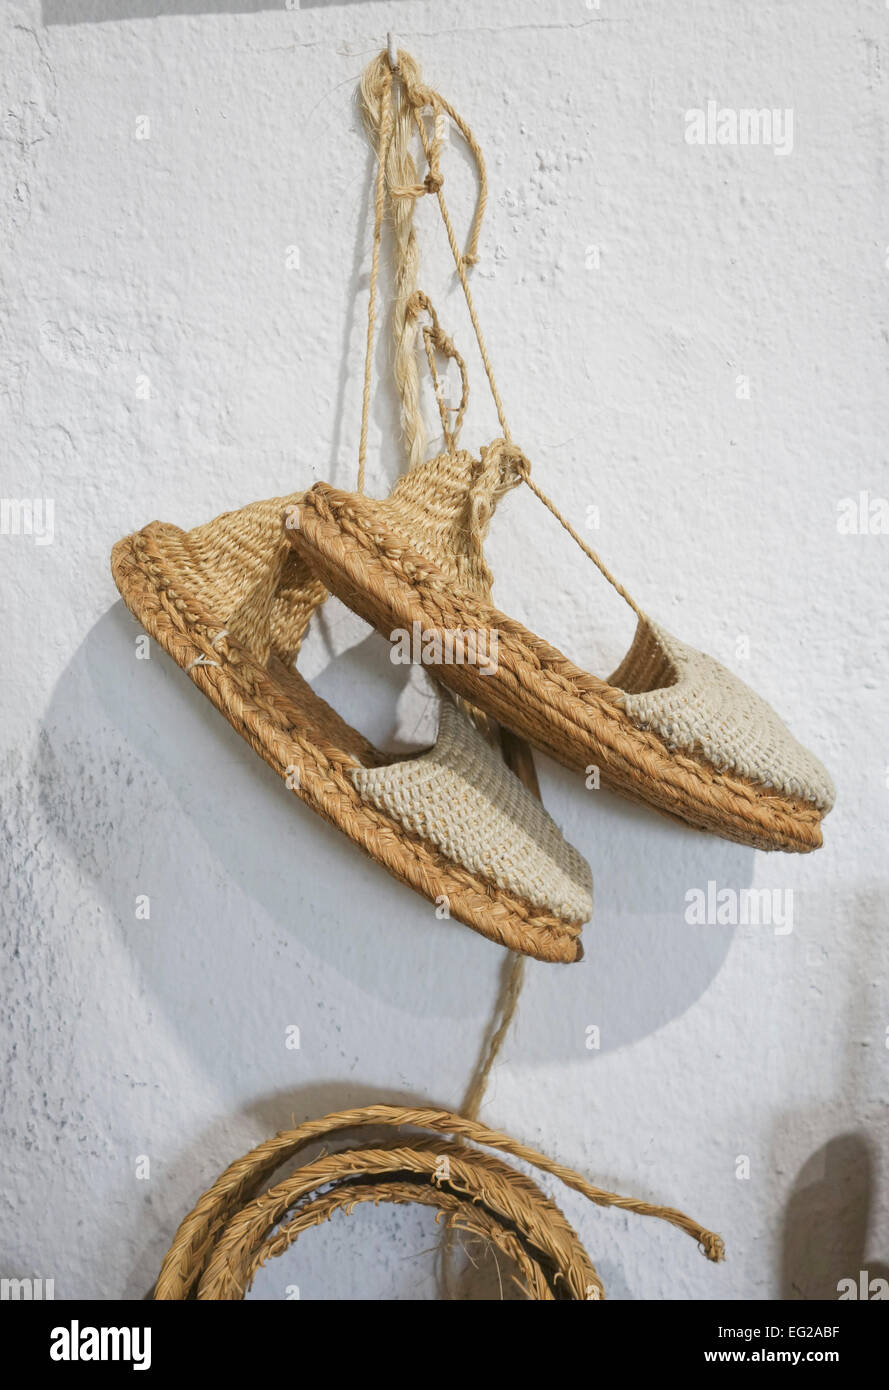 Une paire d'espadrilles, faite de sparterie, halfah, herbe ou herbe sparterie Musée ethnologique à Mijas, Andalousie, espagne. Banque D'Images